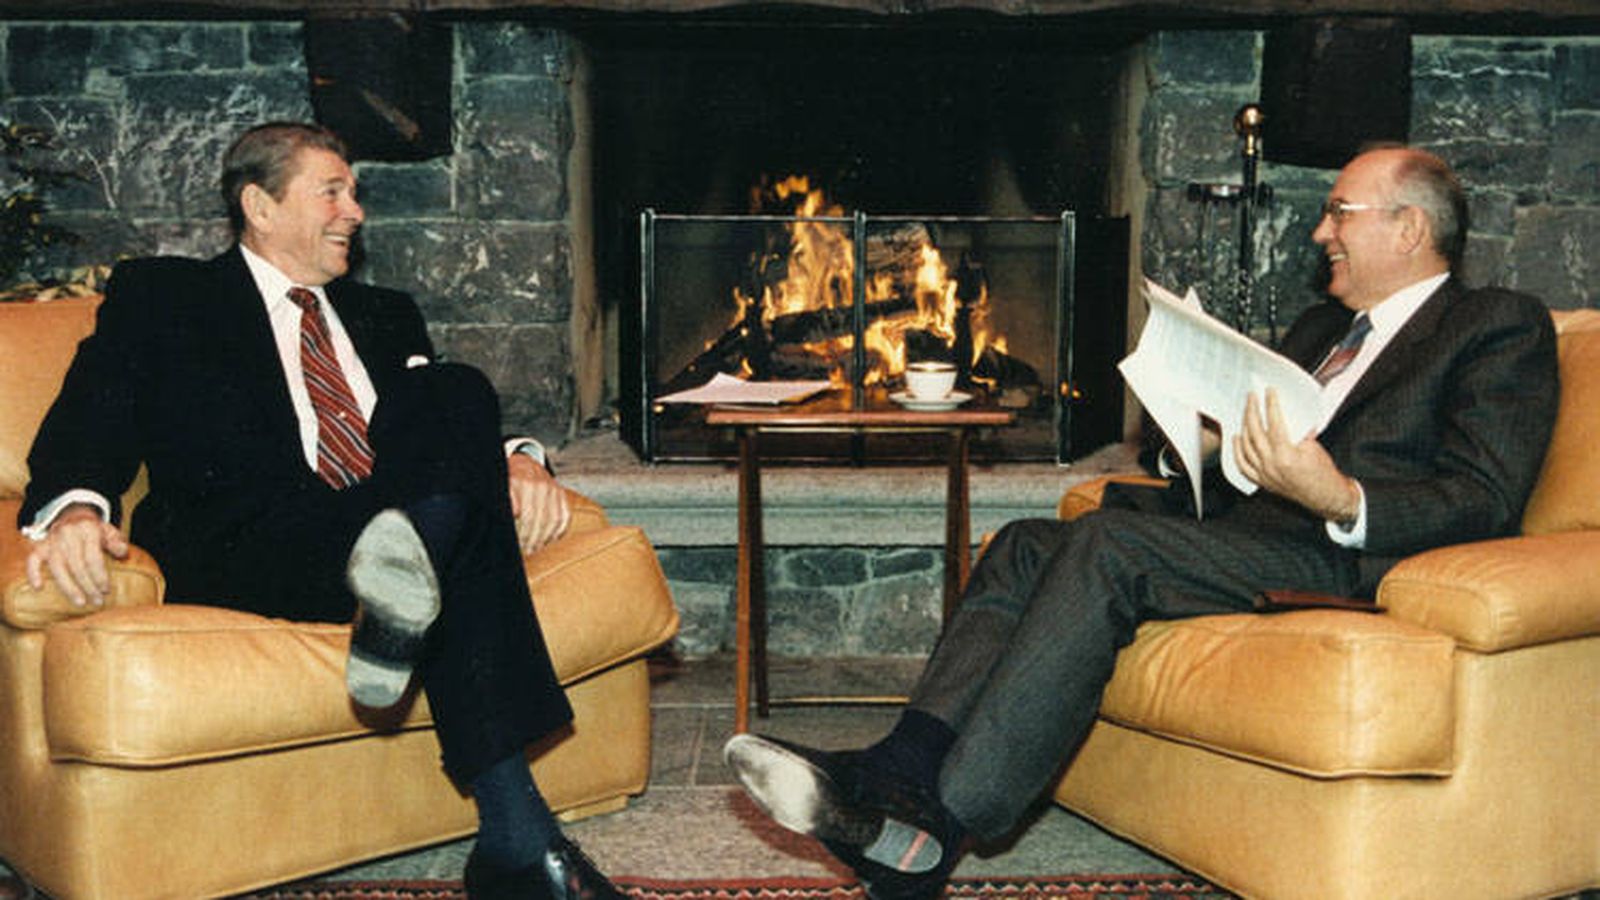 Foto: Primer encuentro entre el presidente estadounidense Ronald Reagan y el líder soviético Mijail Gorbachov, en noviembre de 1985 (Biblioteca Presidencial Ronald Reagan)